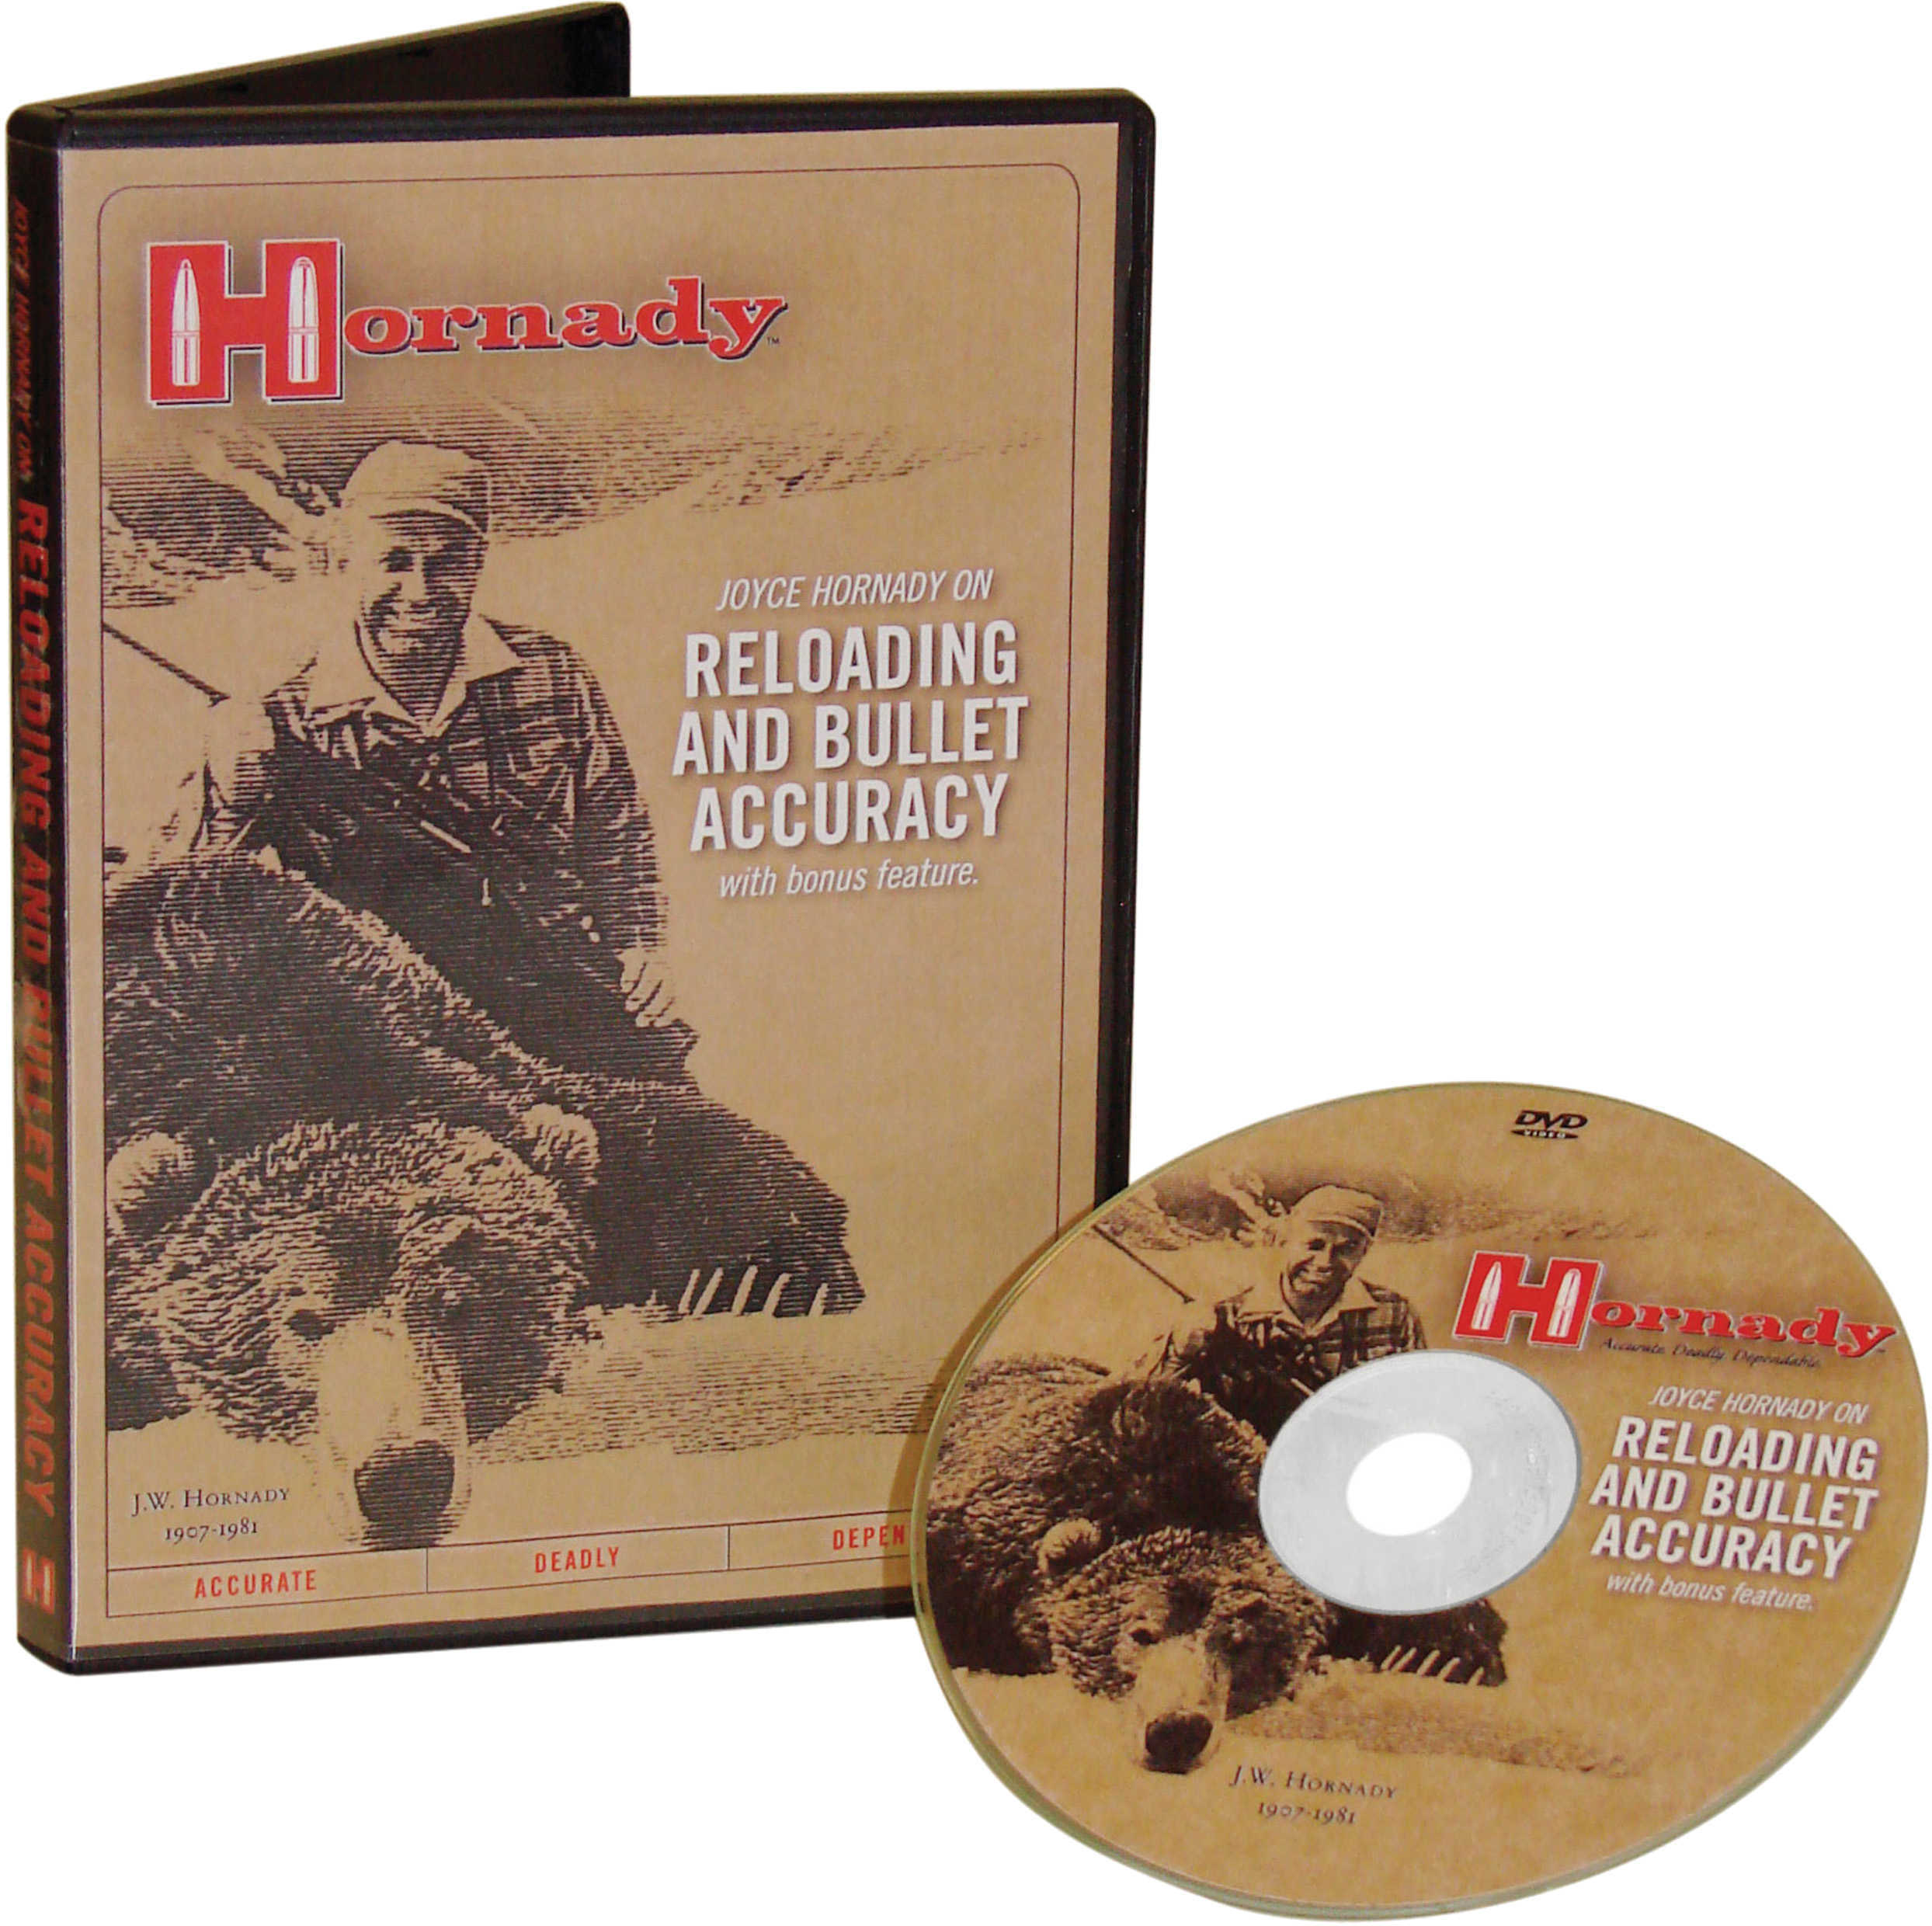 Hornady Joyce & Metallic Reloading DVD